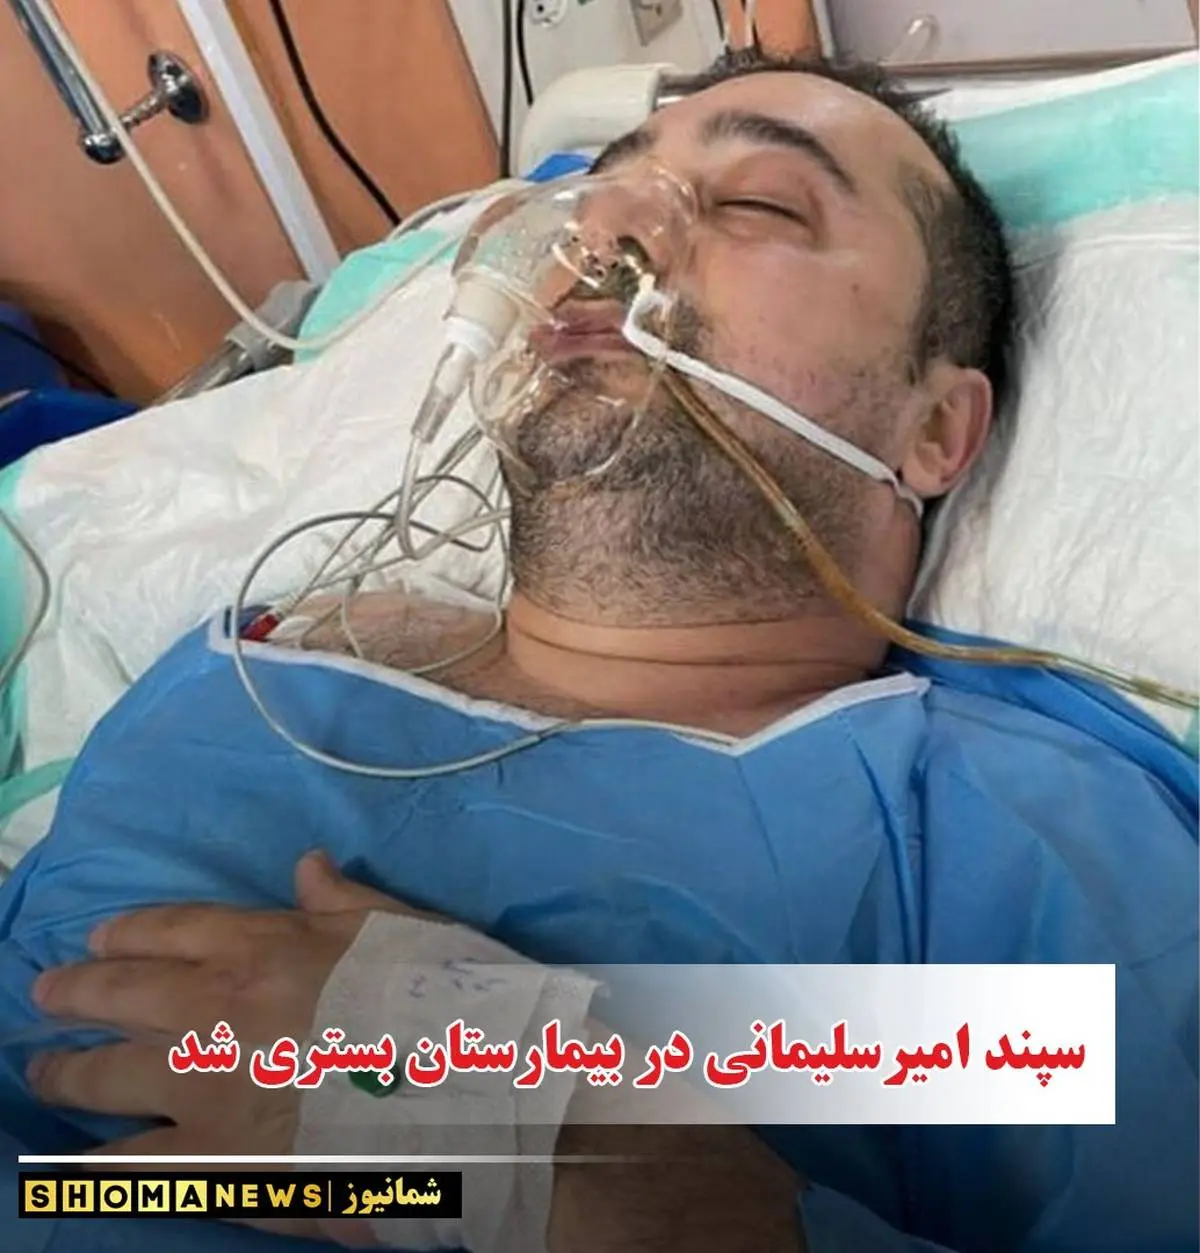 سپند امیرسلیمانی دوباره در بیمارستان بستری شد + عکس